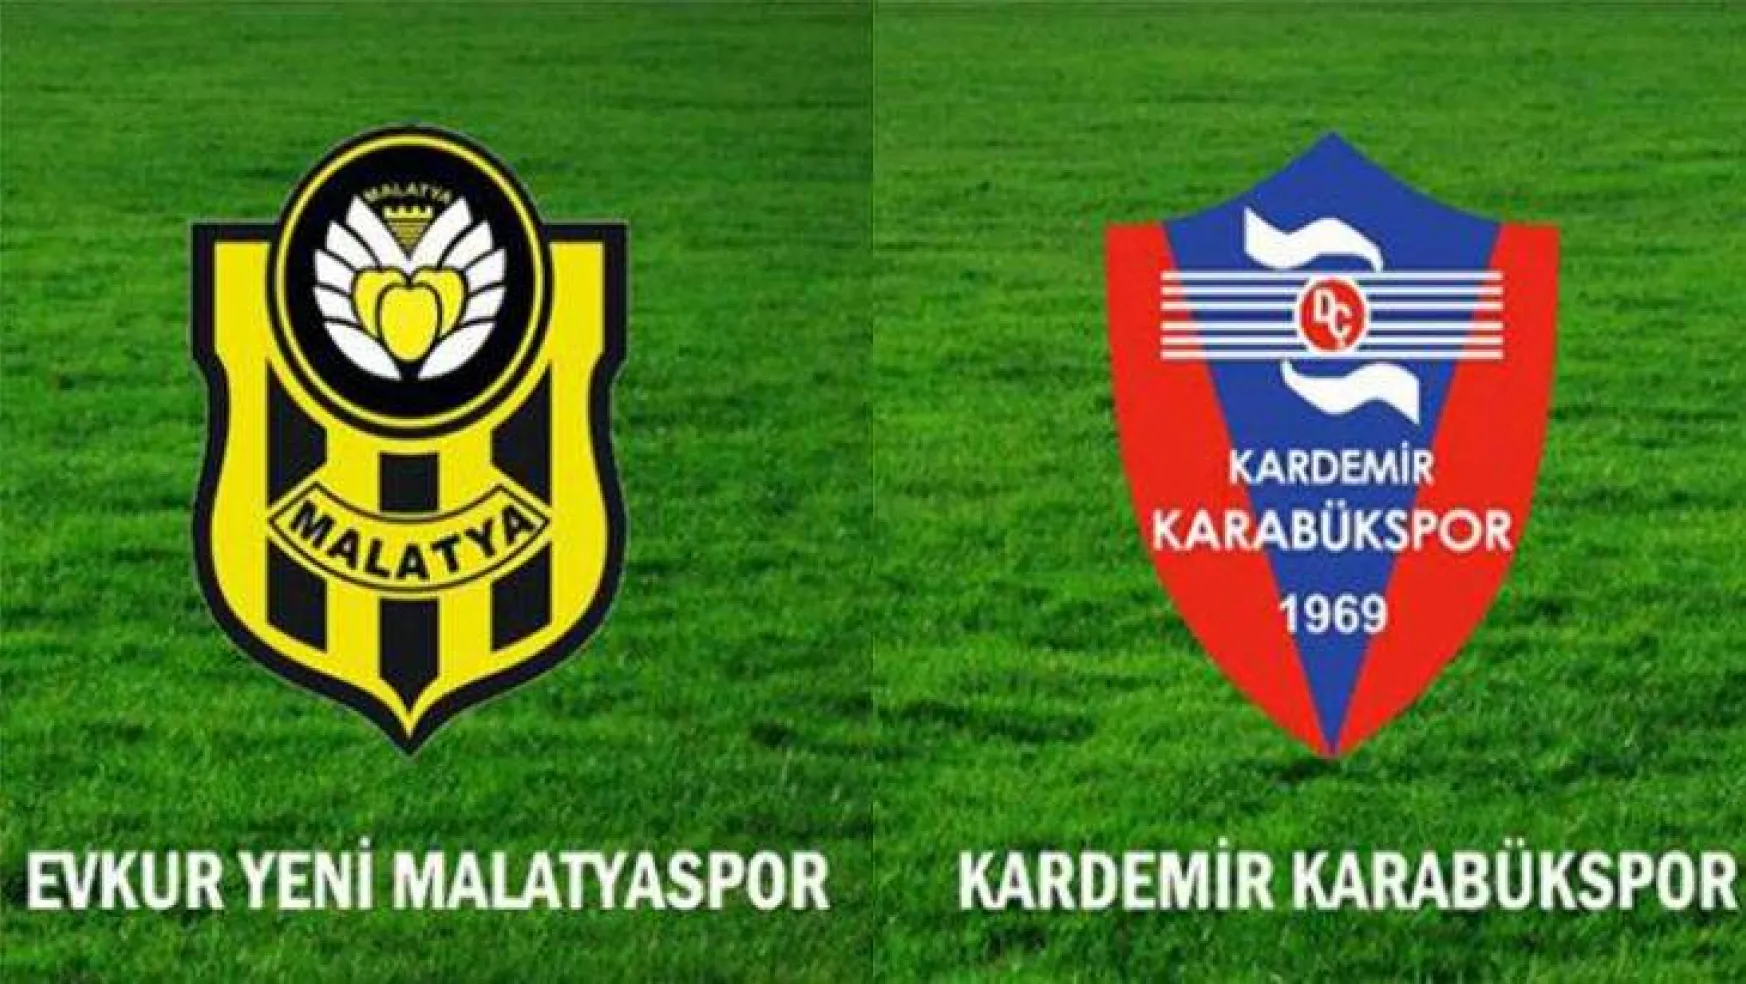 Evkur Yeni Malatyaspor, Kardemir Karabükspor'u 3-1 Mağlup Etti